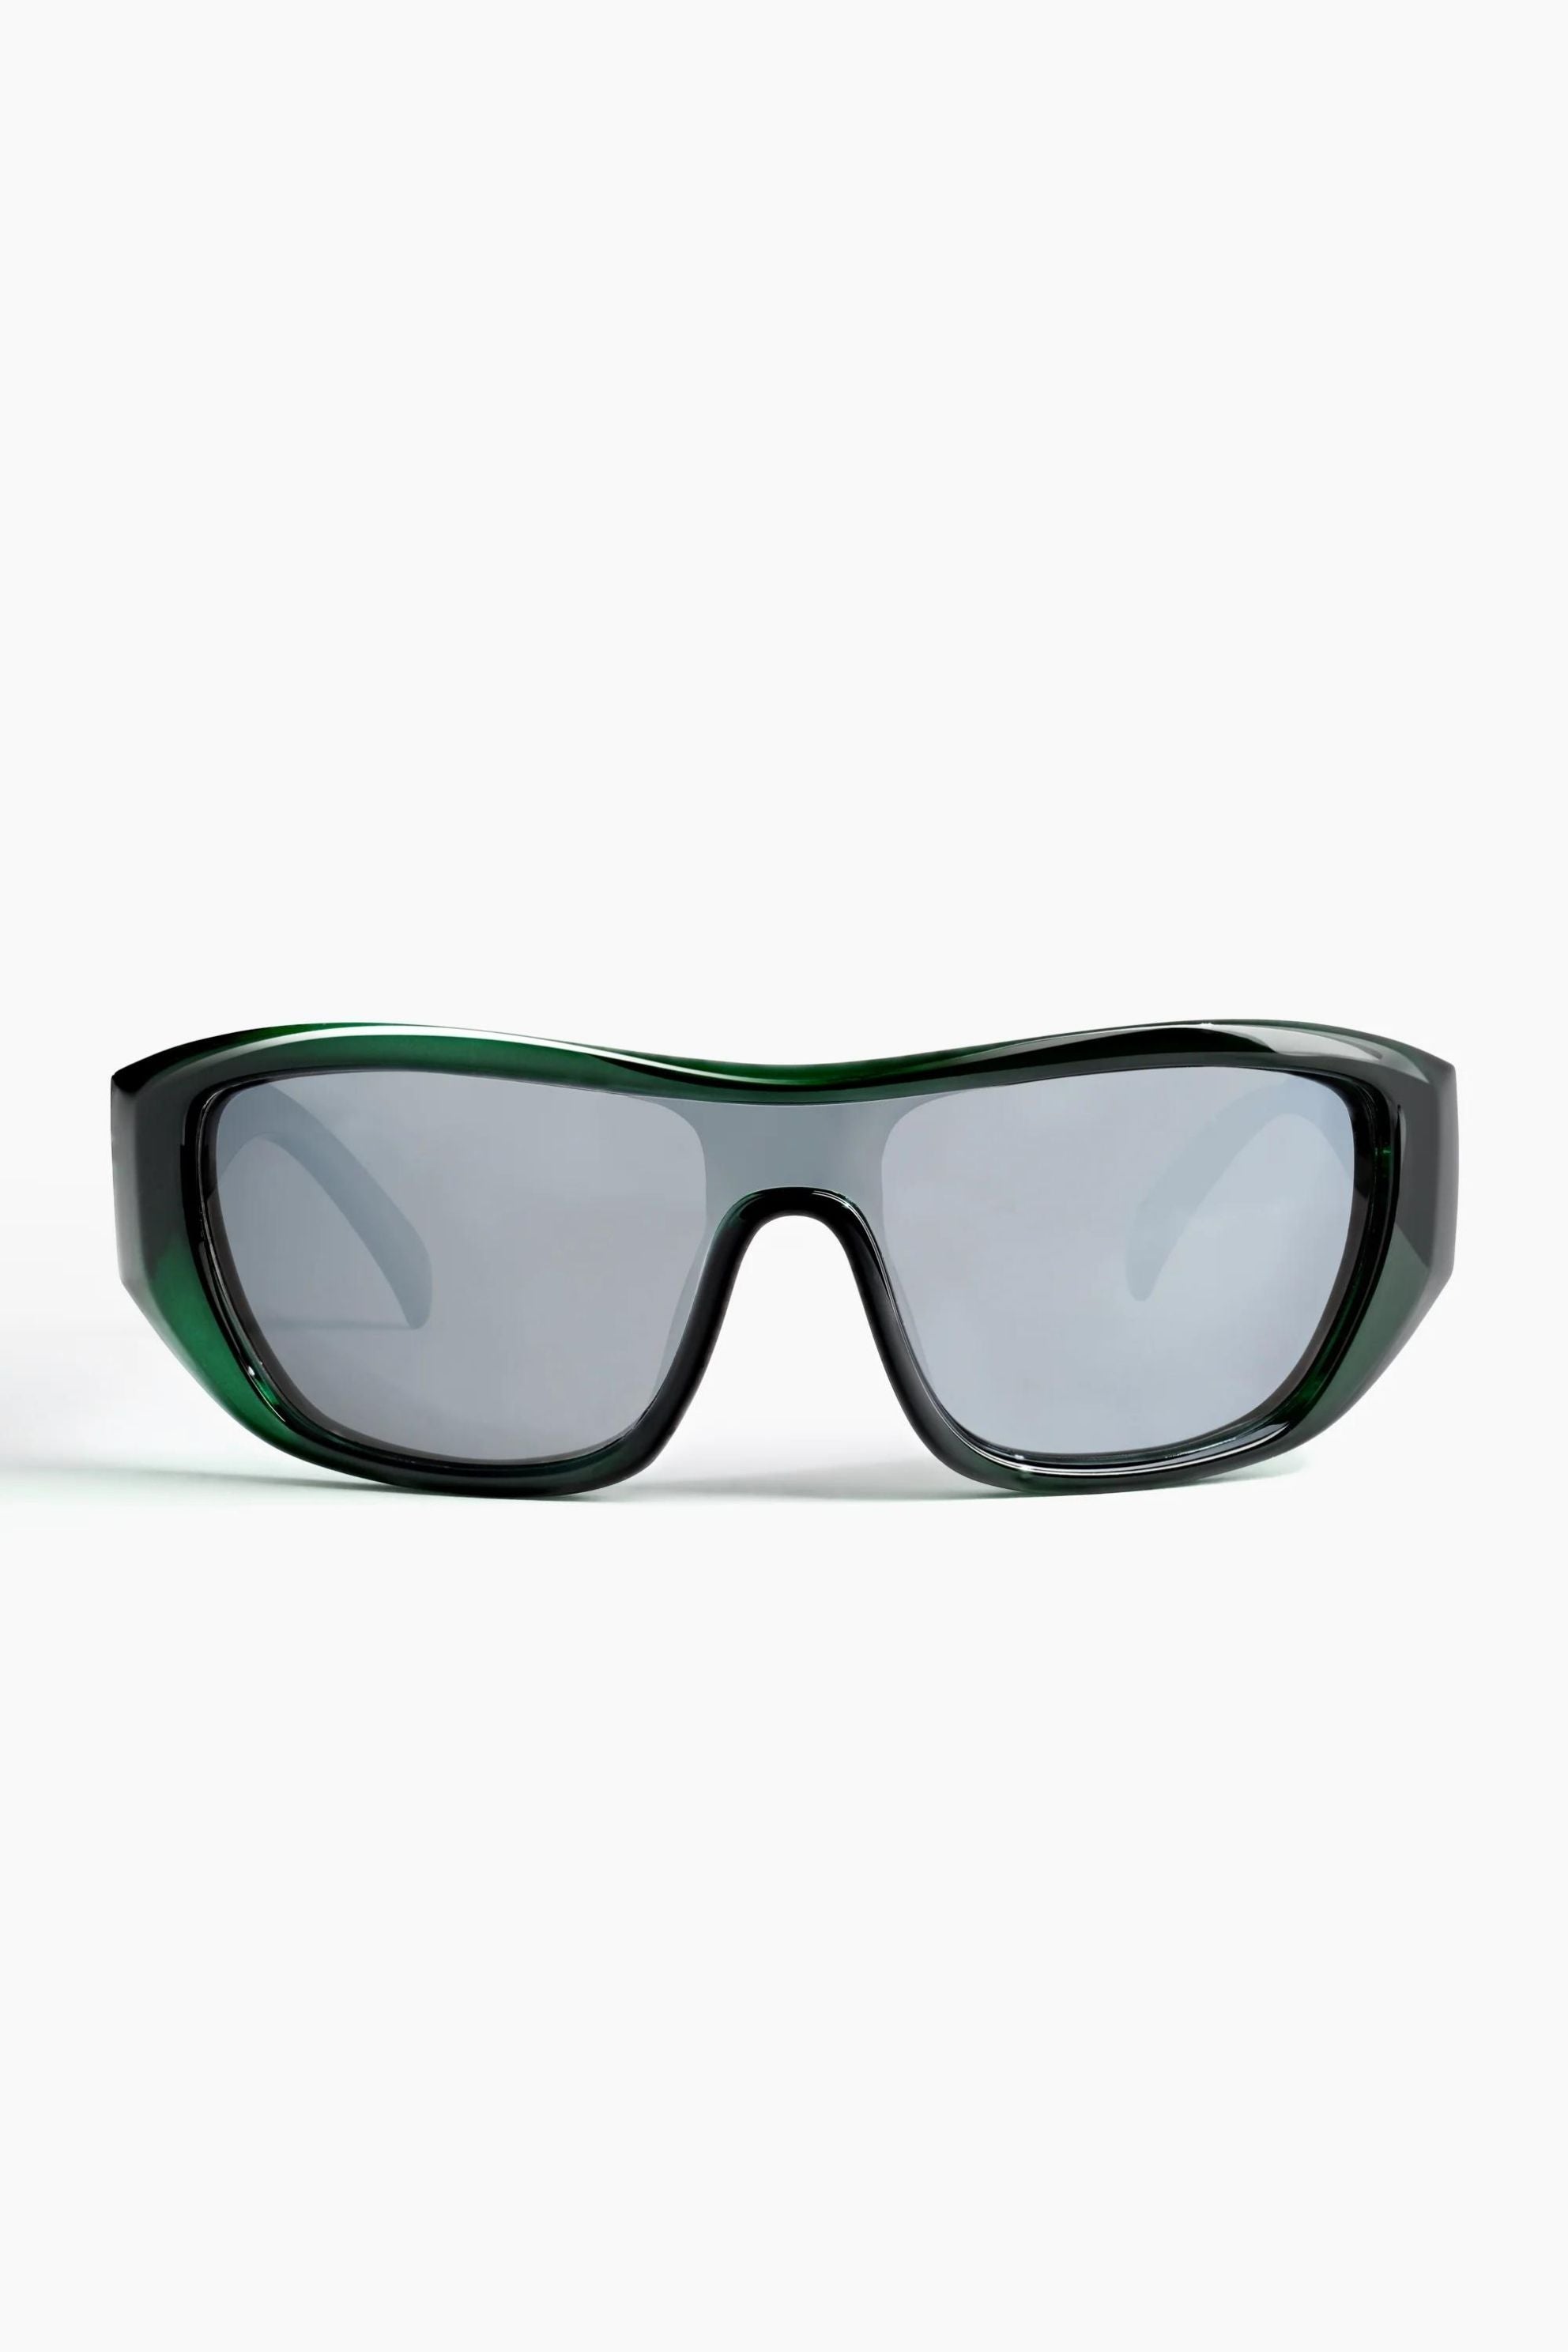 Lexen Sunglasses Racing Green / Chrome